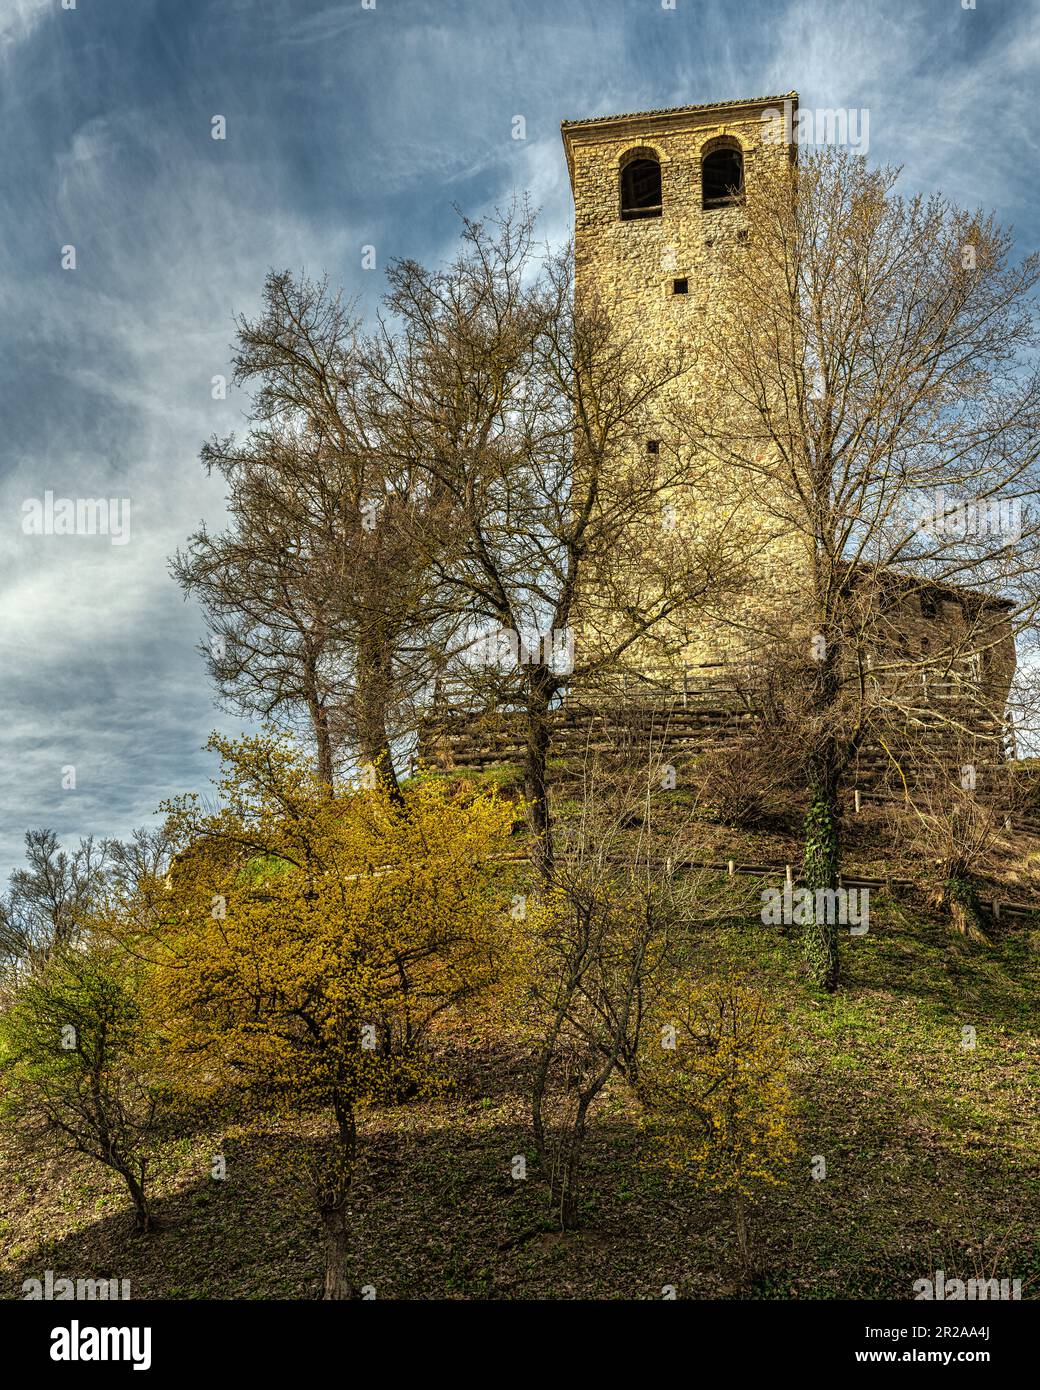 El castillo de Sarzano es uno de los castillos medievales de las tierras Matildic. Casina , Reggio Emilia provincia, Emilia Romaña, Italia, Europa Foto de stock